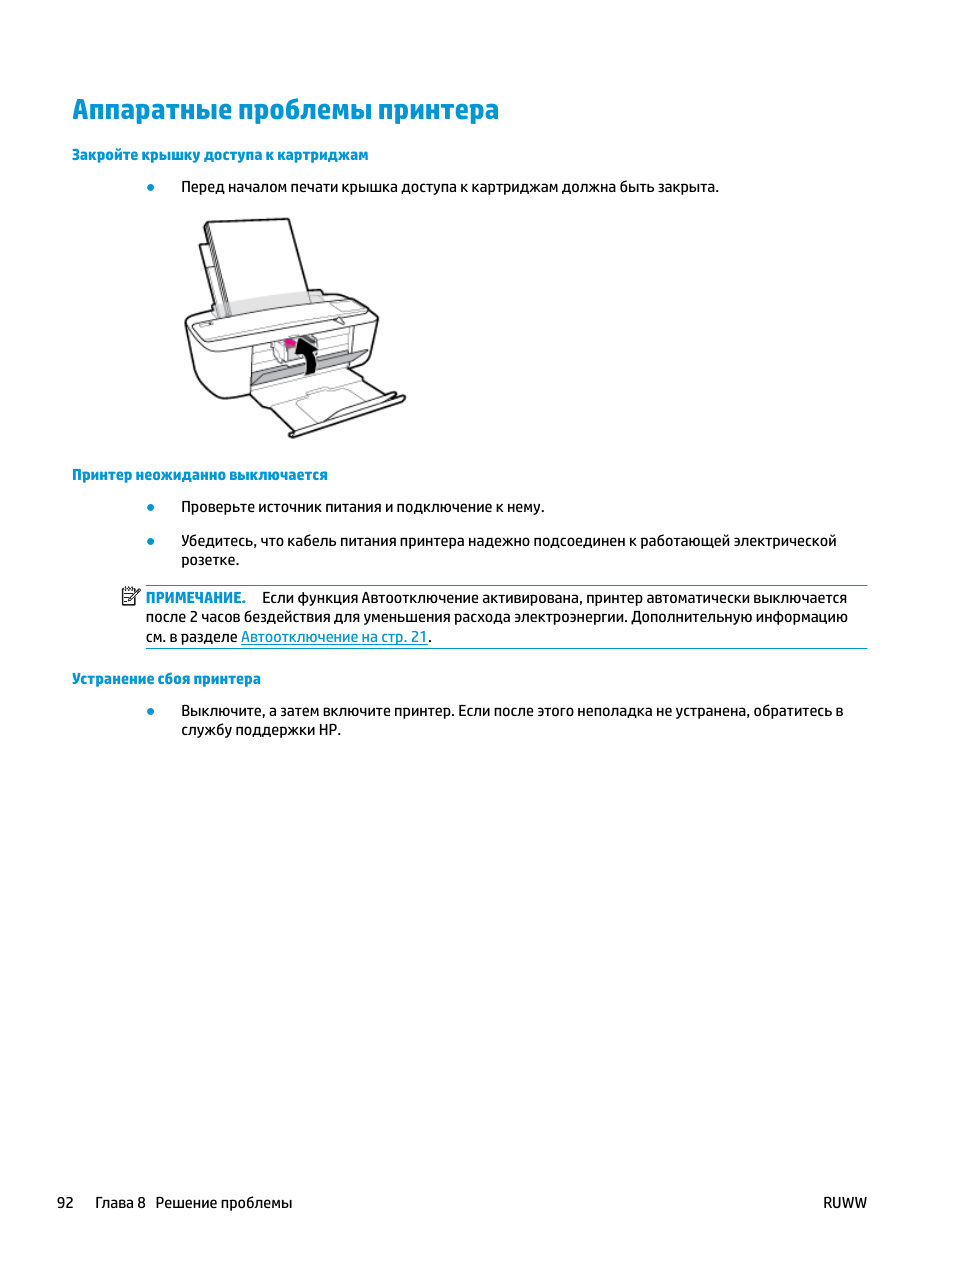 Аппаратные проблемы принтера | Инструкция по эксплуатации HP DeskJet 3700 | Страница 96 / 122